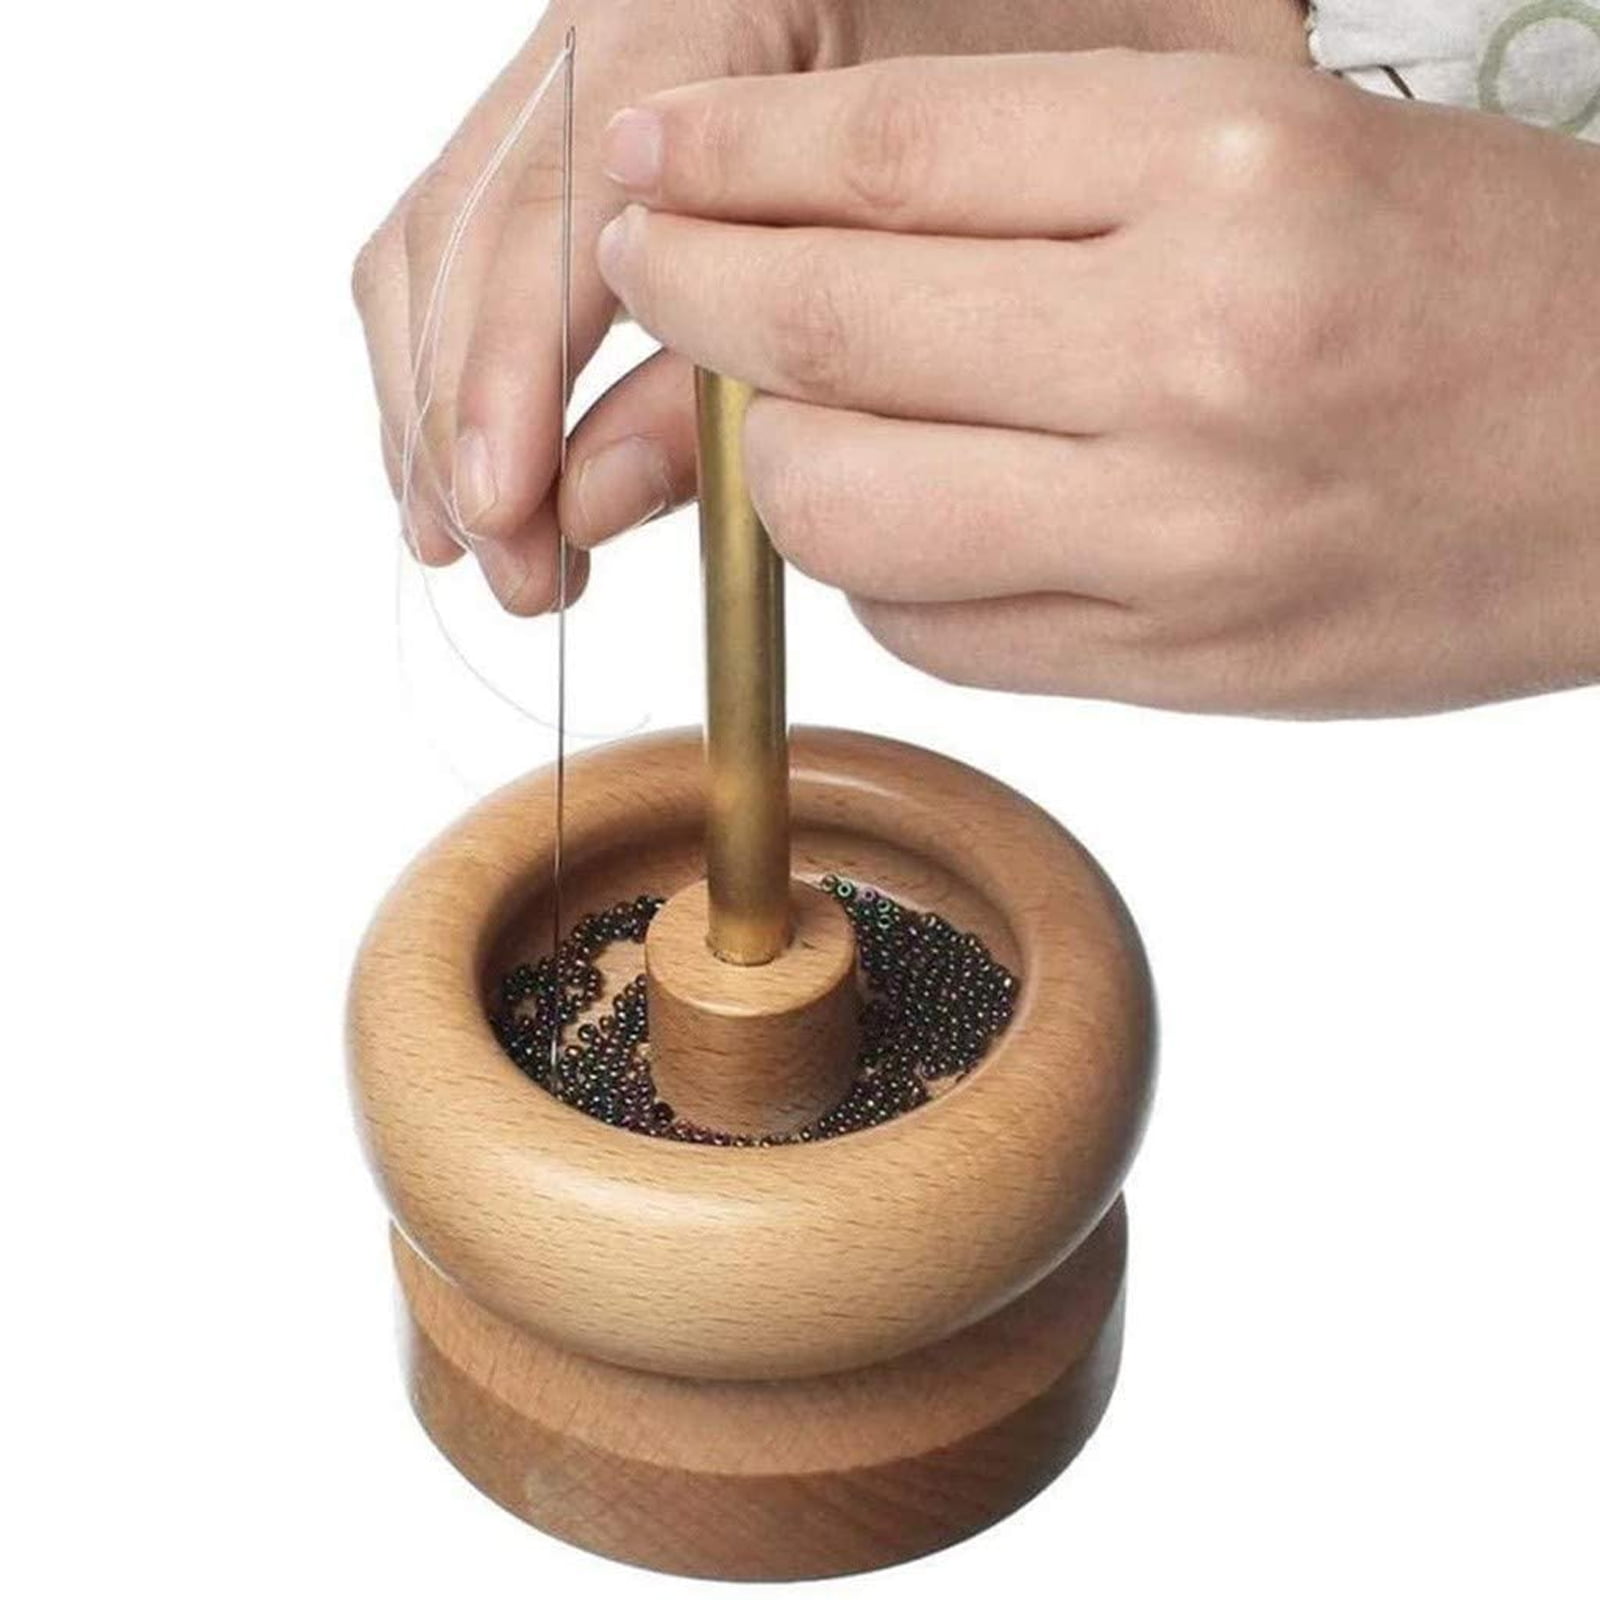 TIANTIAN DIY Making Bead Spinner Holder Gem Workshop Wooden Crafting Project Stringing for DIY Jewellery Craft Making Beading Holder Stringing Spinner Bowl